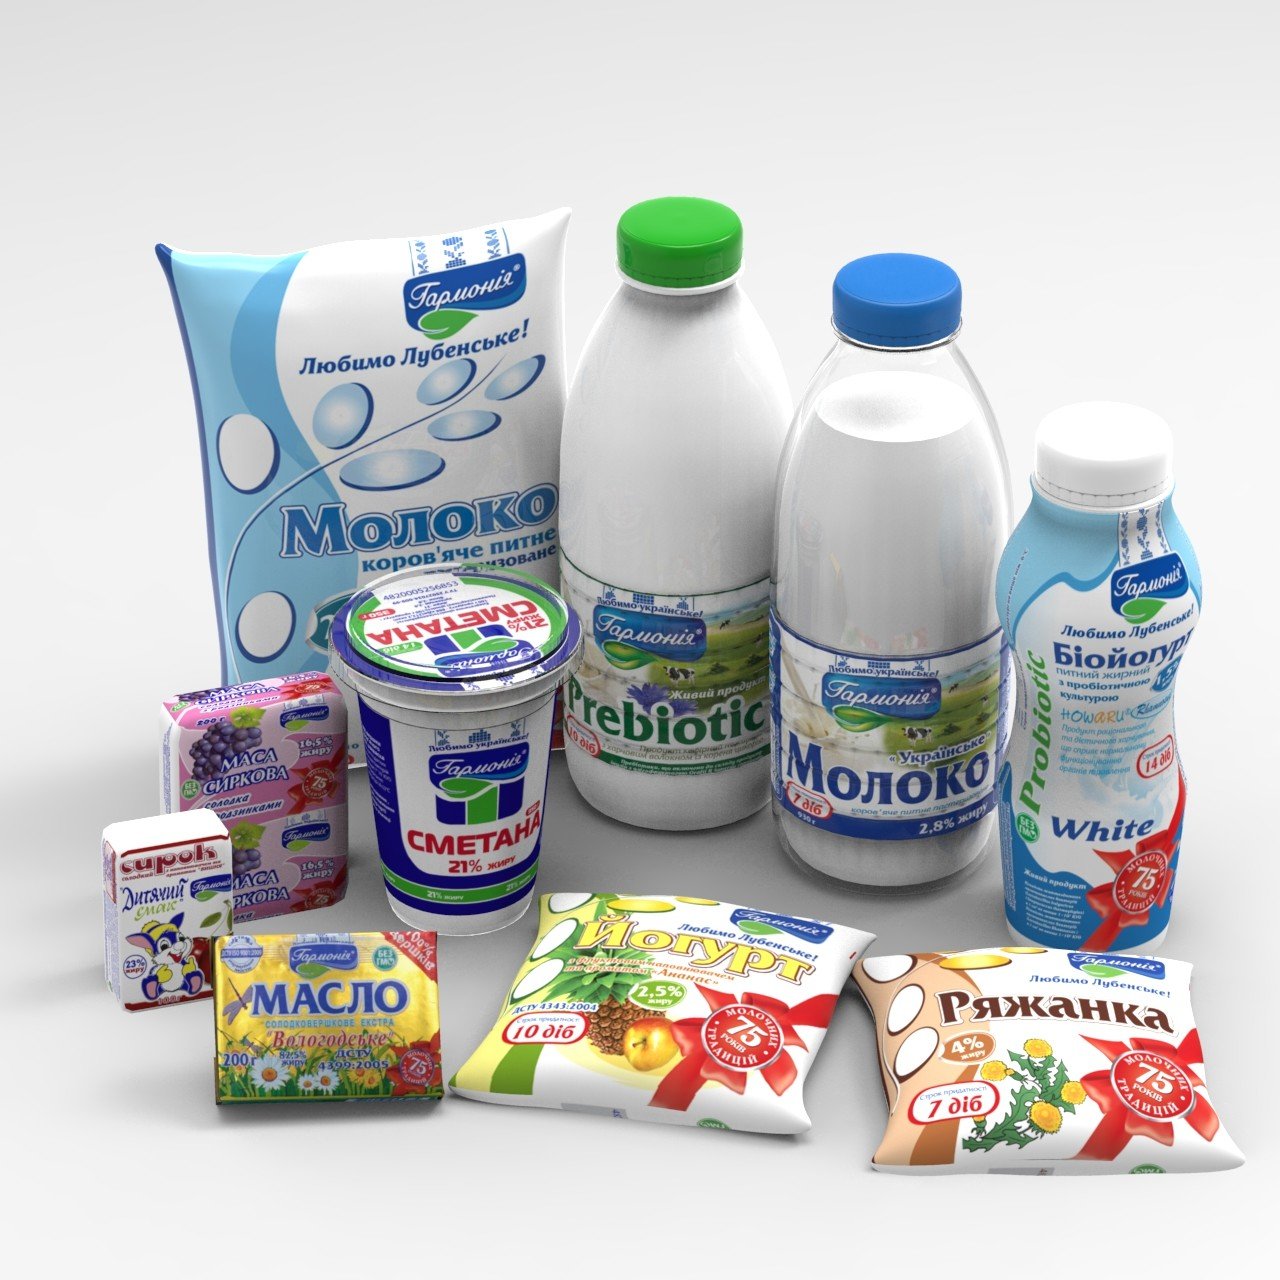 Product 63. Молочная продукция. Молочная продукты. Кисломолочная продукция. Молочные продукции.